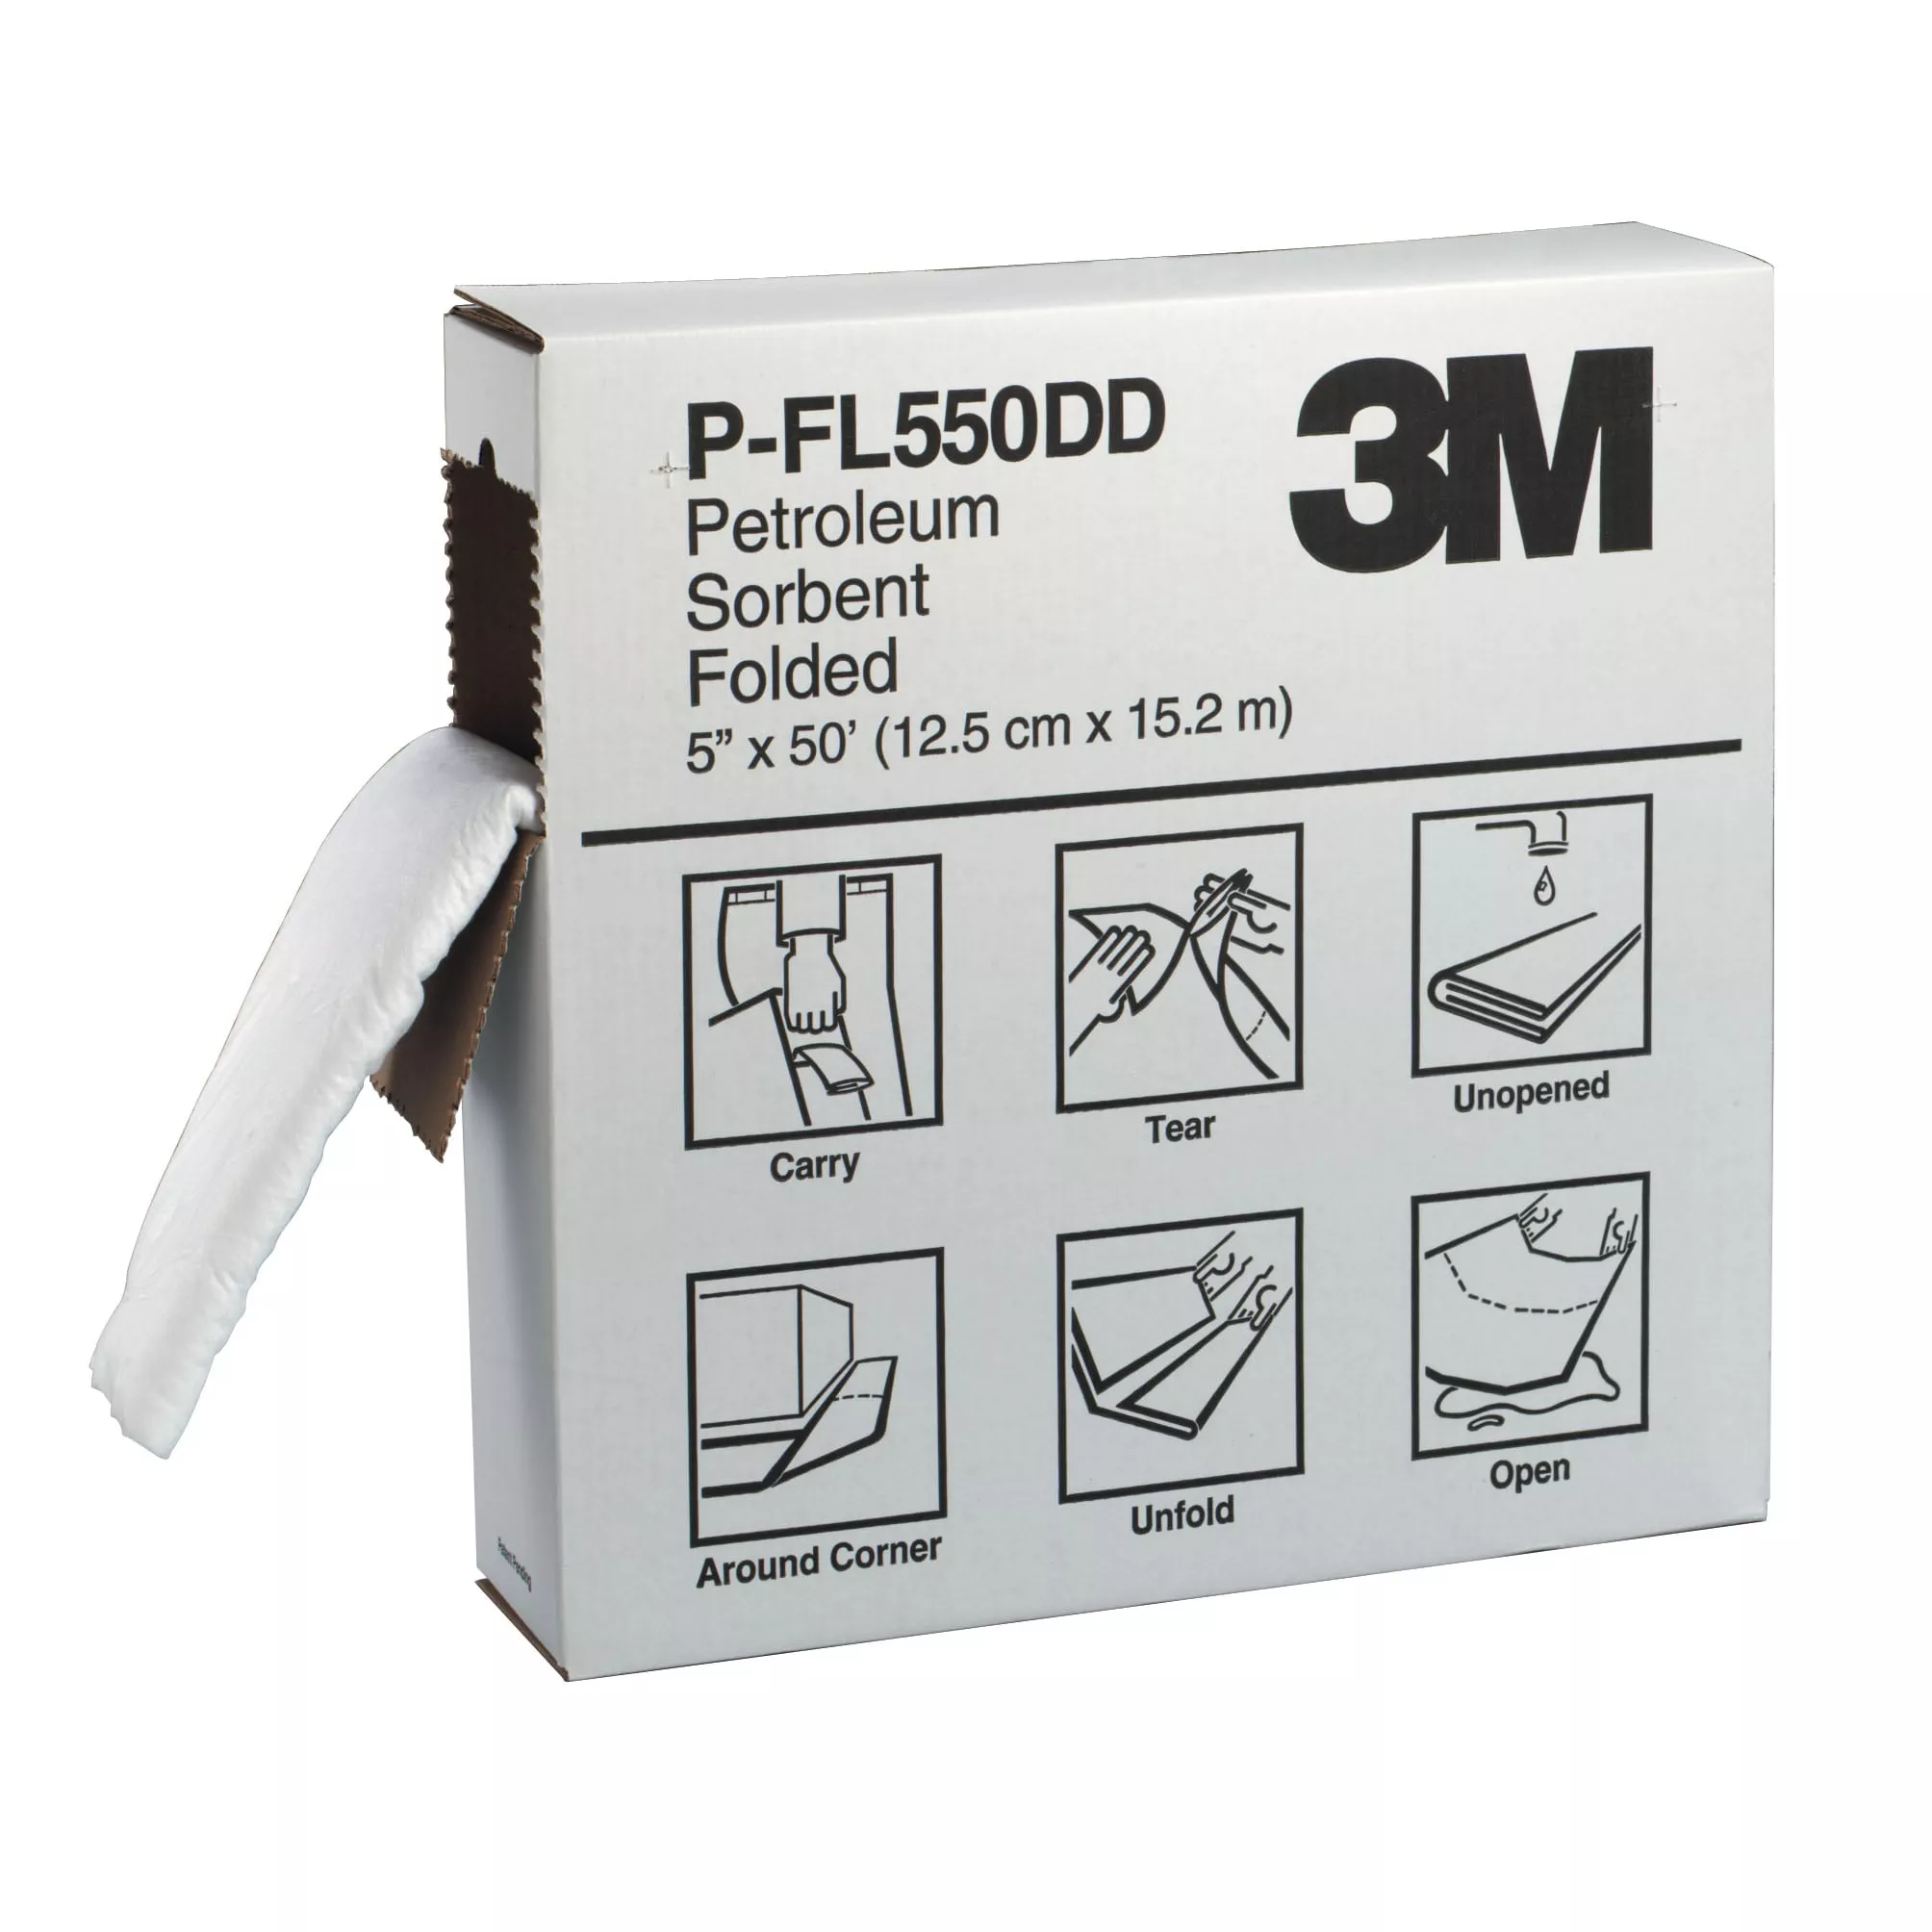 SKU 7000002025 | 3M™ Oil Sorbent Folded P-FL550DD